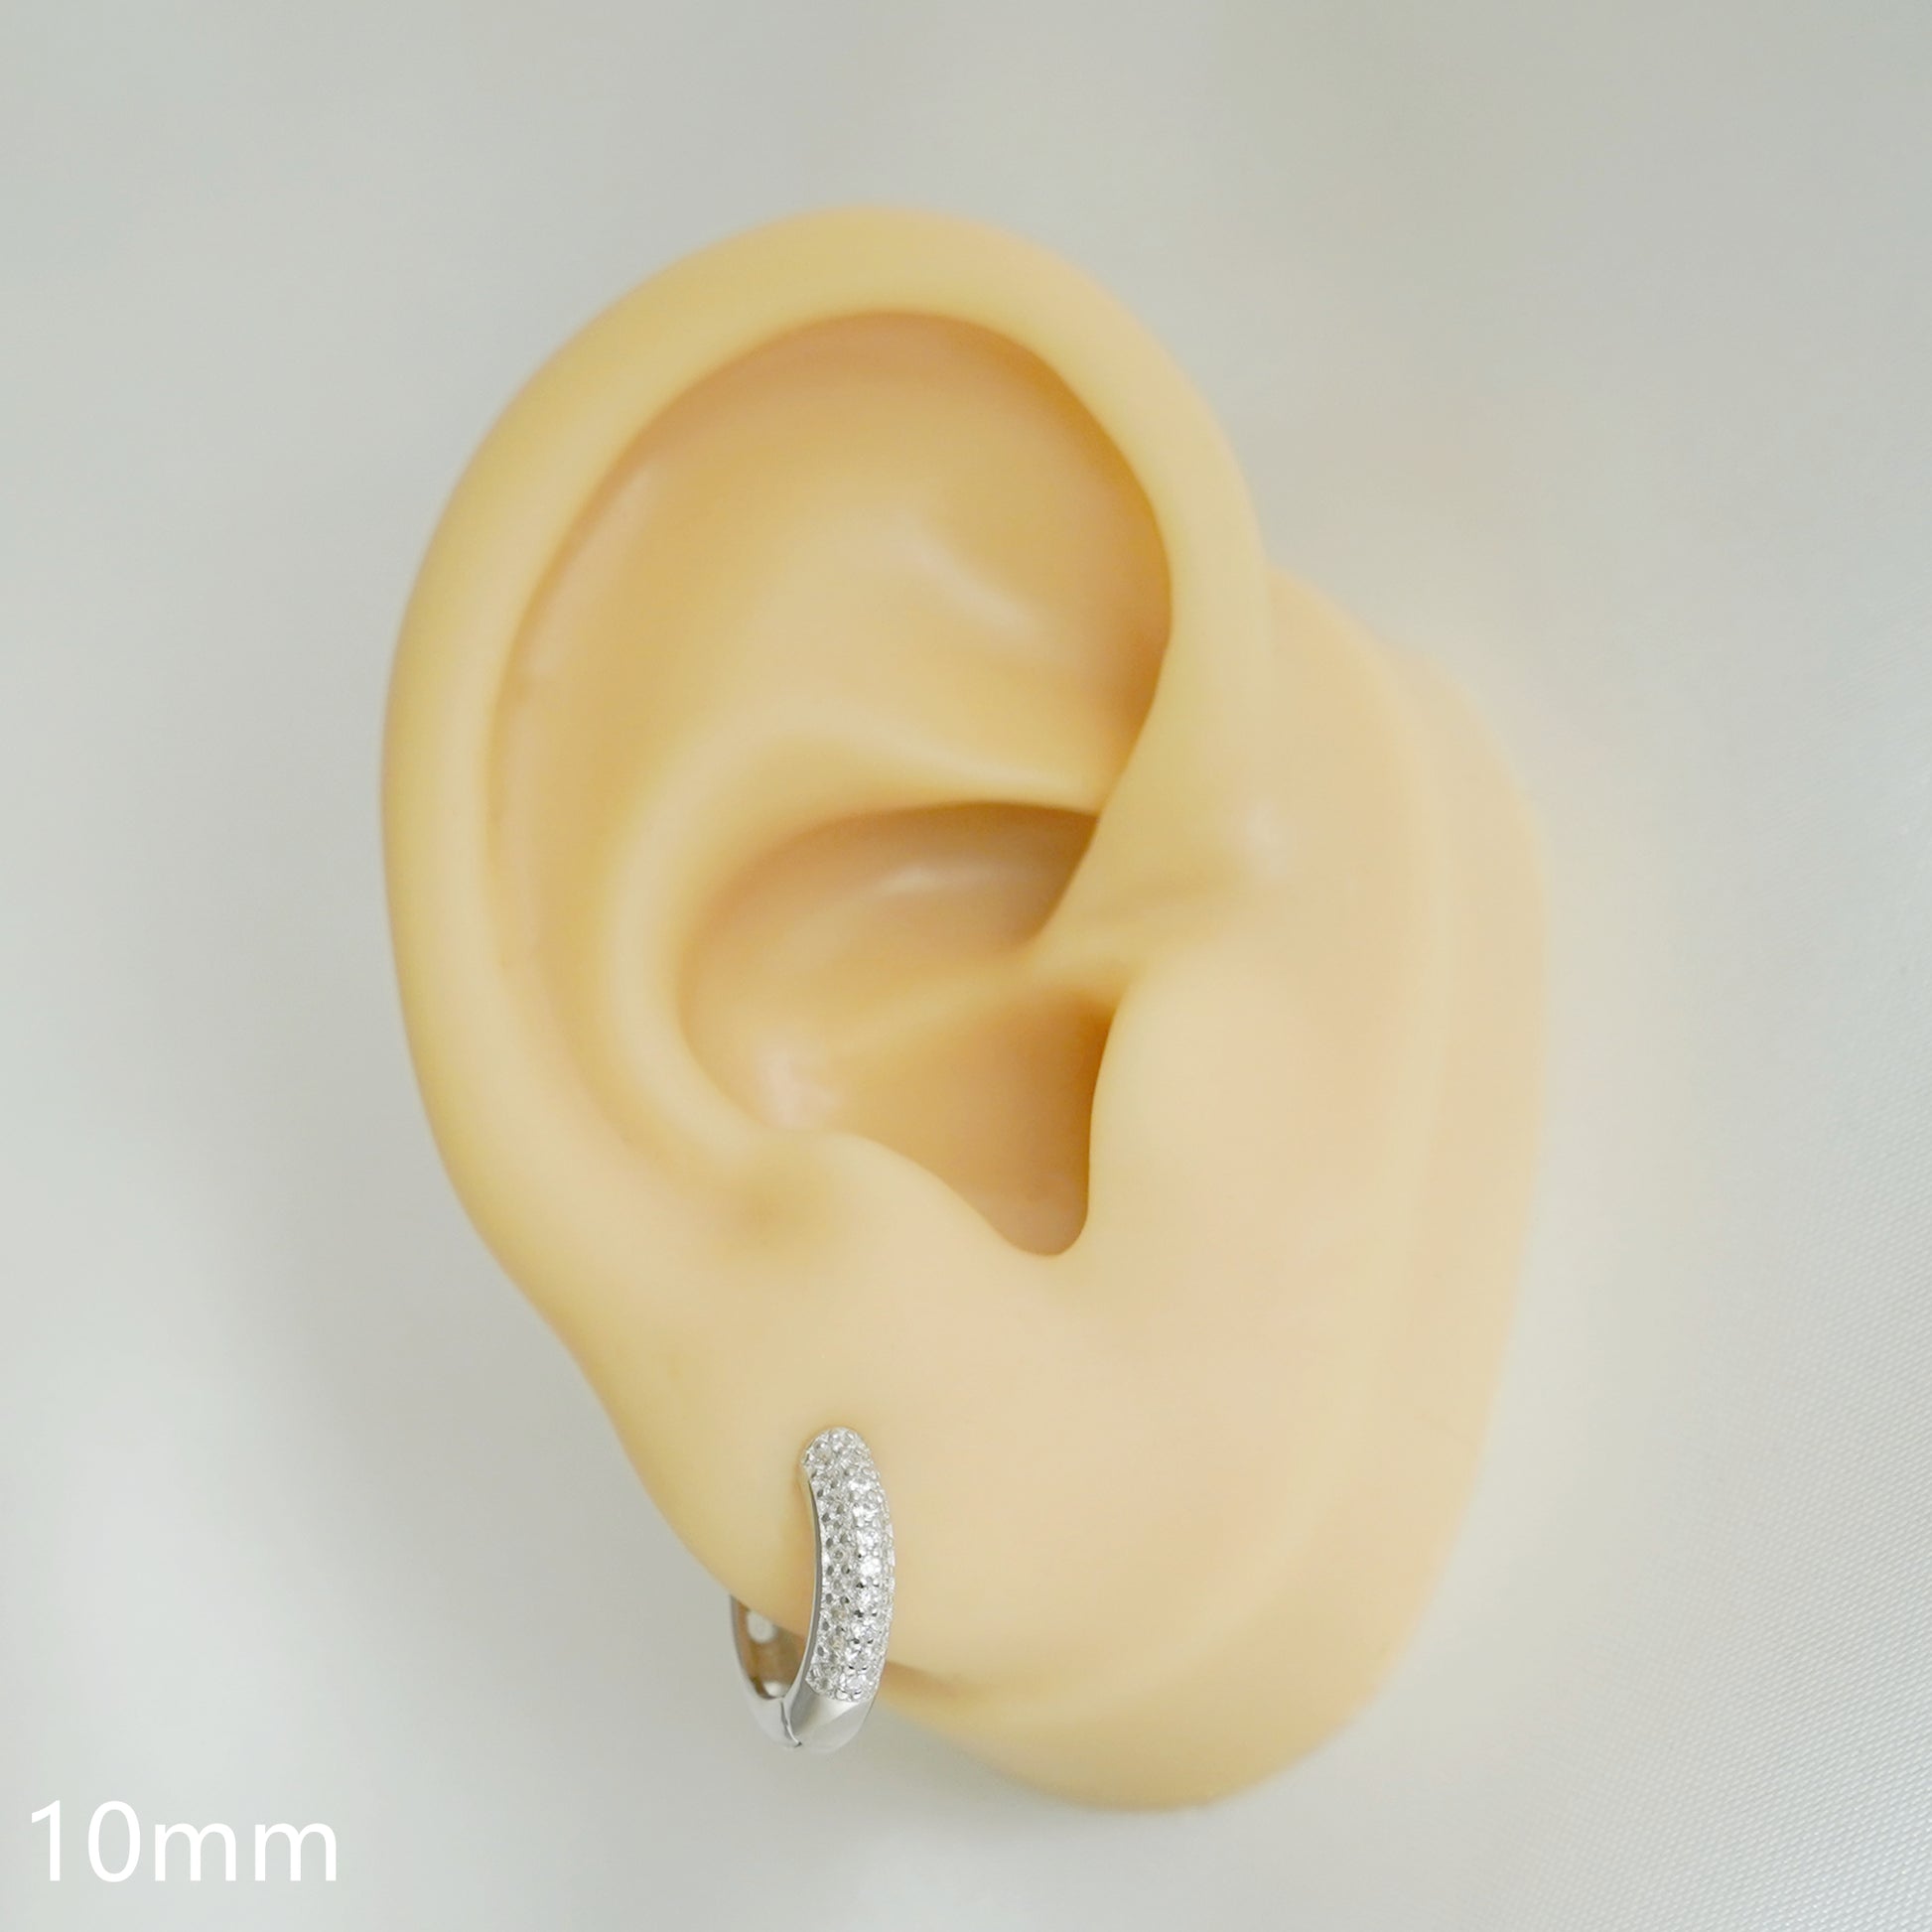 3mm CZ Huggie Sleeper Hoop Earrings in Sterling Silver | Rhodium & Gold Plating - sugarkittenlondon